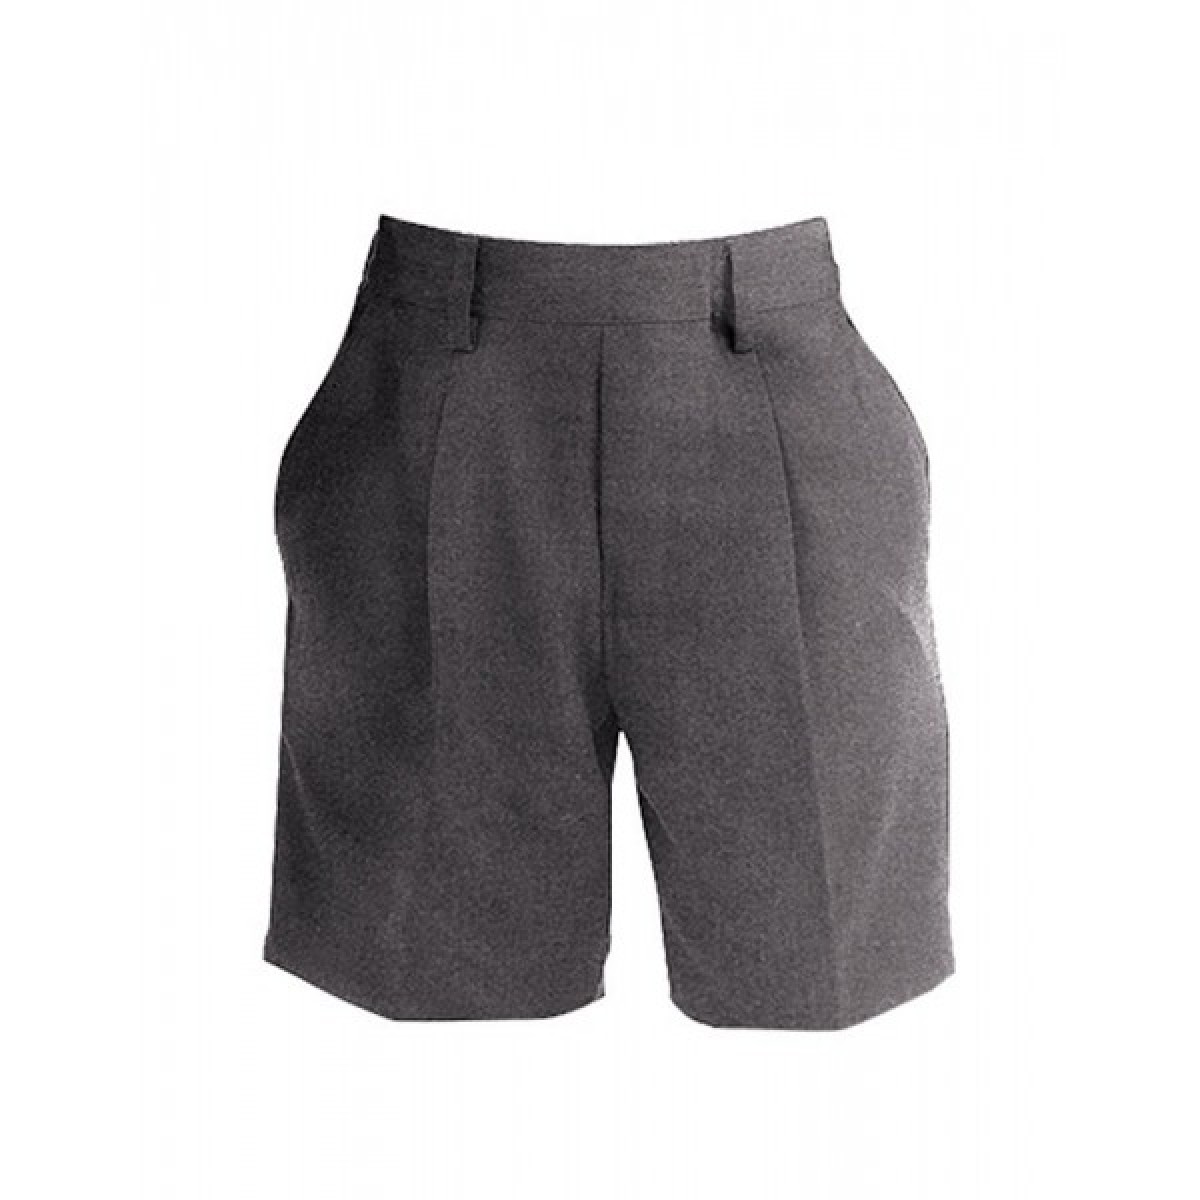 Boys Grey Shorts - Age 3